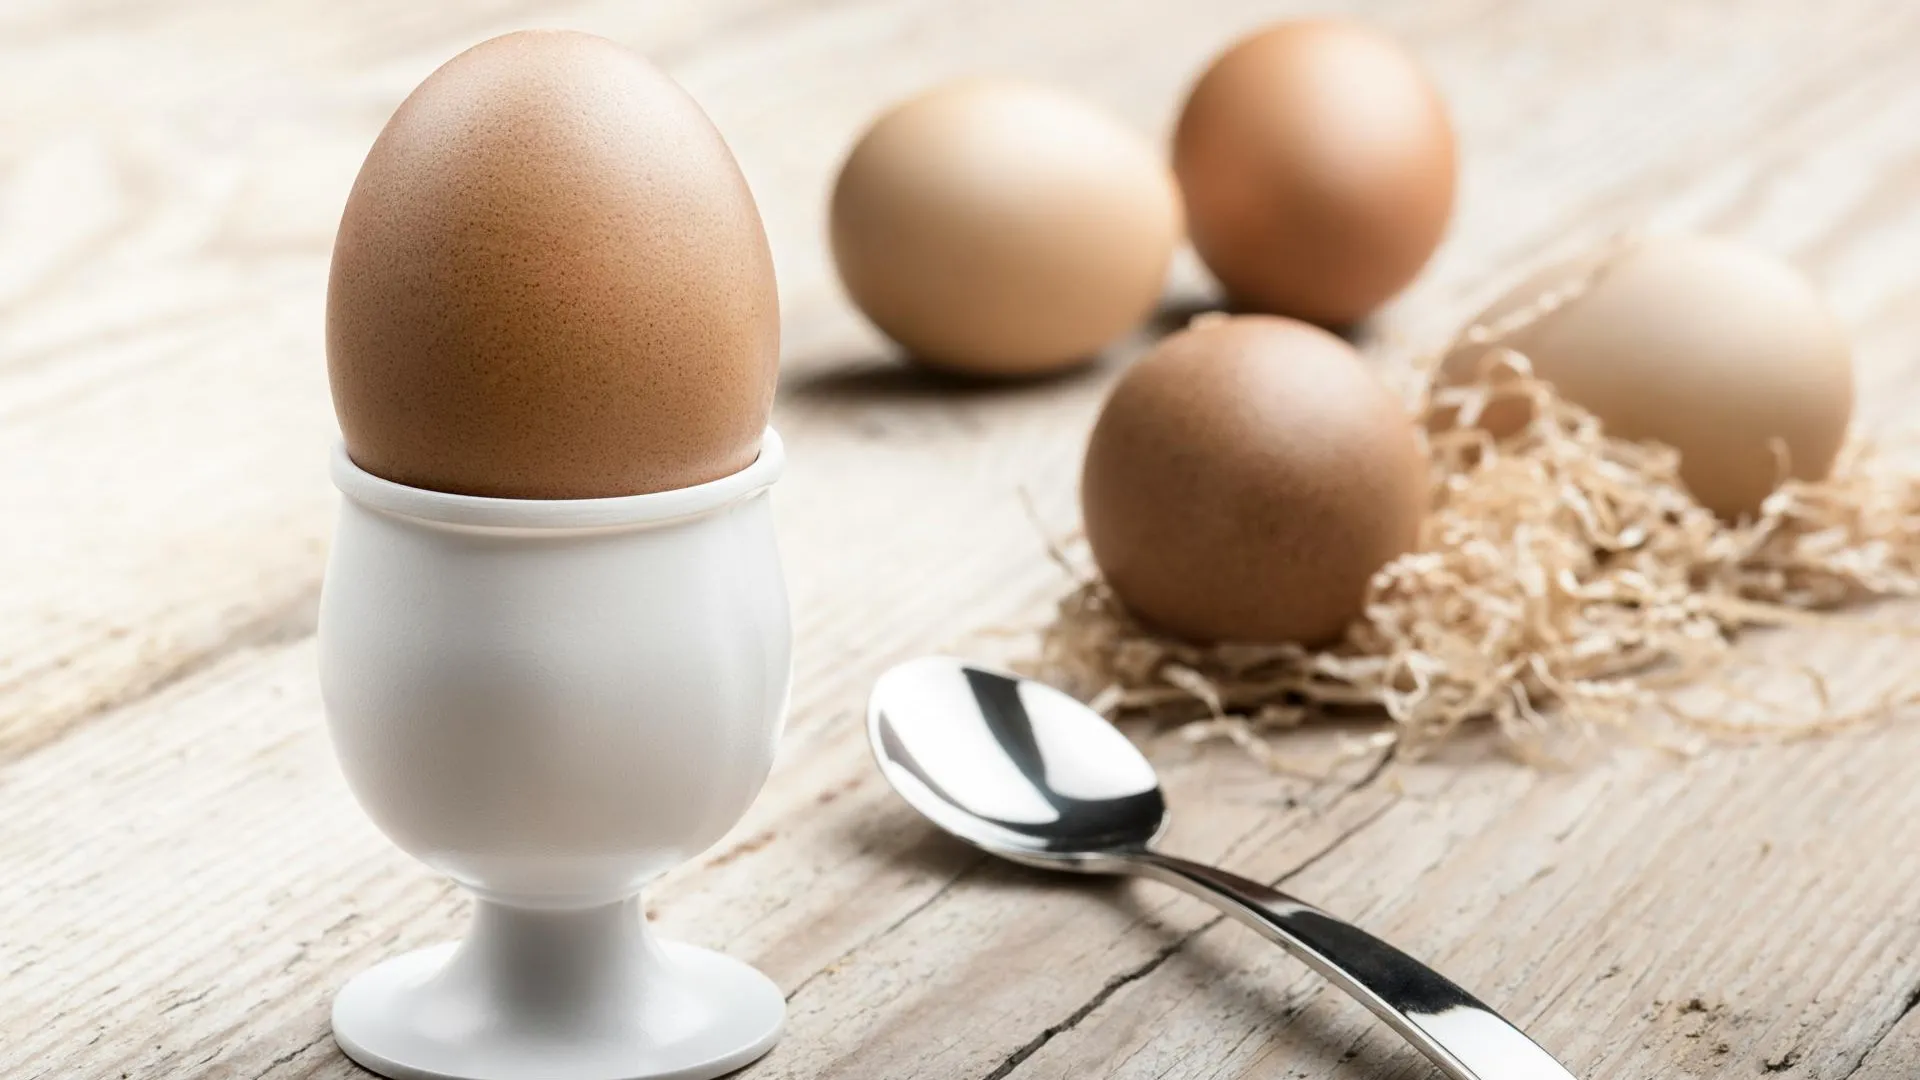 Всмятку, вкрутую, в мешочке: как и сколько варить яйца